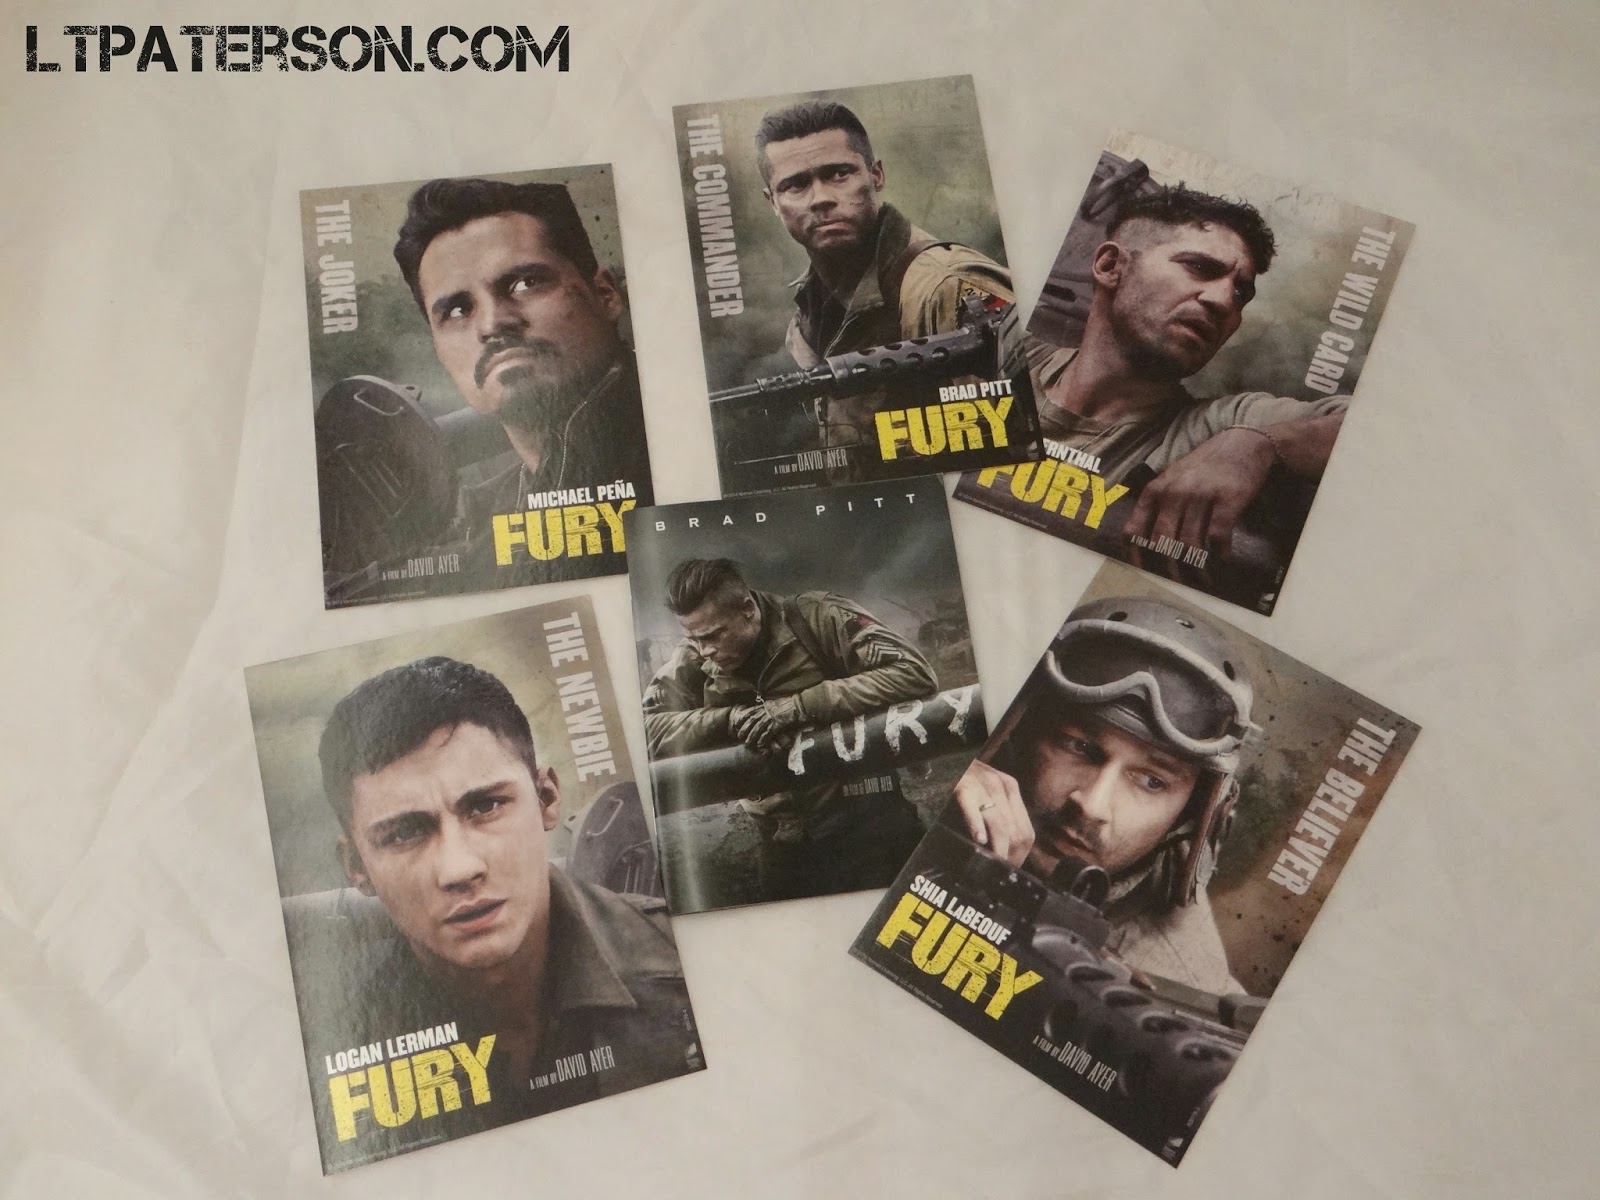 Déballage édition collector Fury spéciale Fnac | Ltpaterson.com Blog jeux video PC ...1600 x 1200